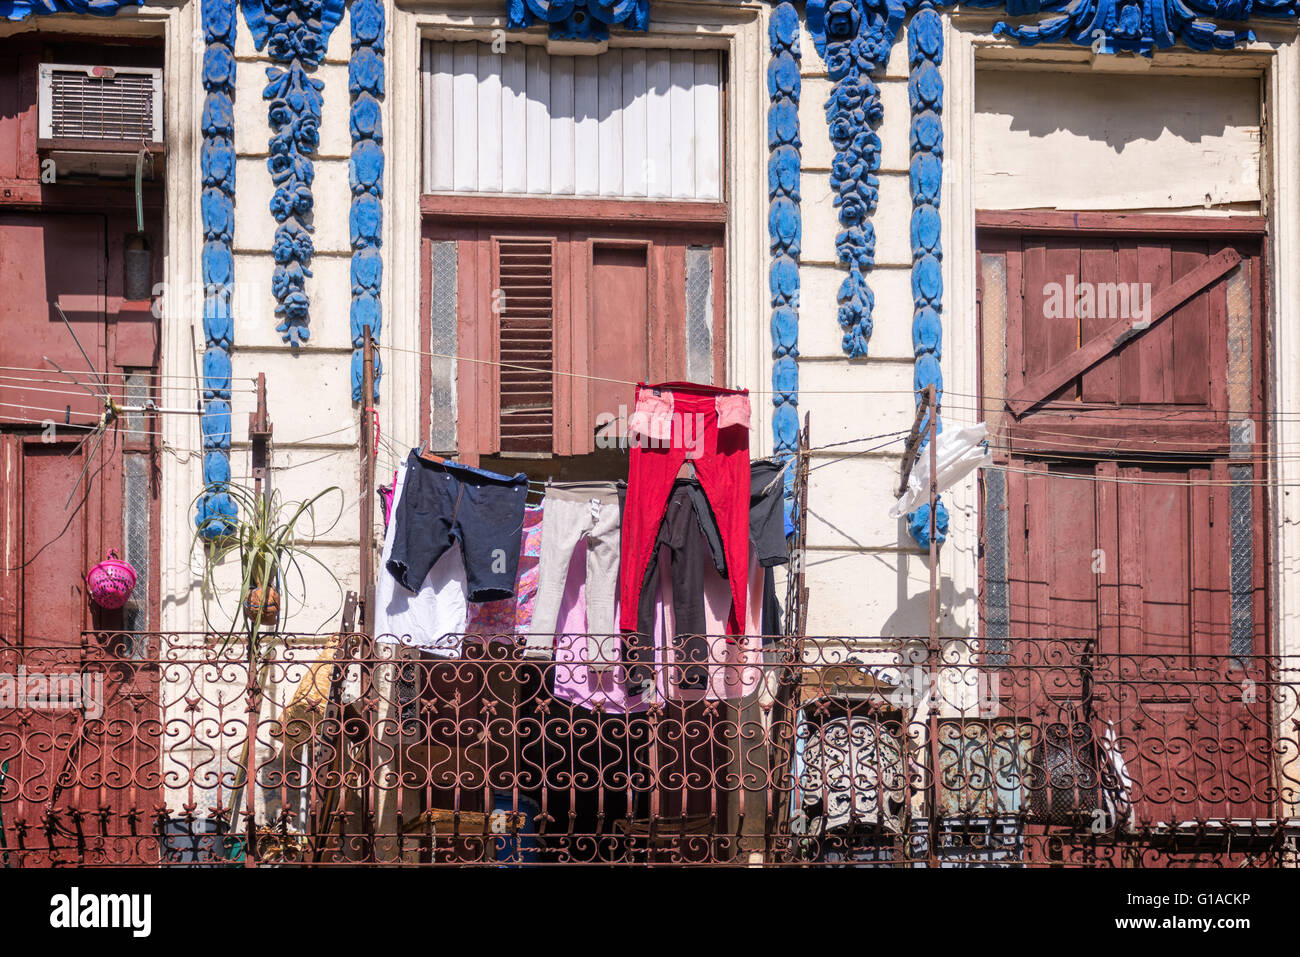 Blanchisserie sur le balcon d'un immeuble ancien, la vieille Havane, Cuba Banque D'Images